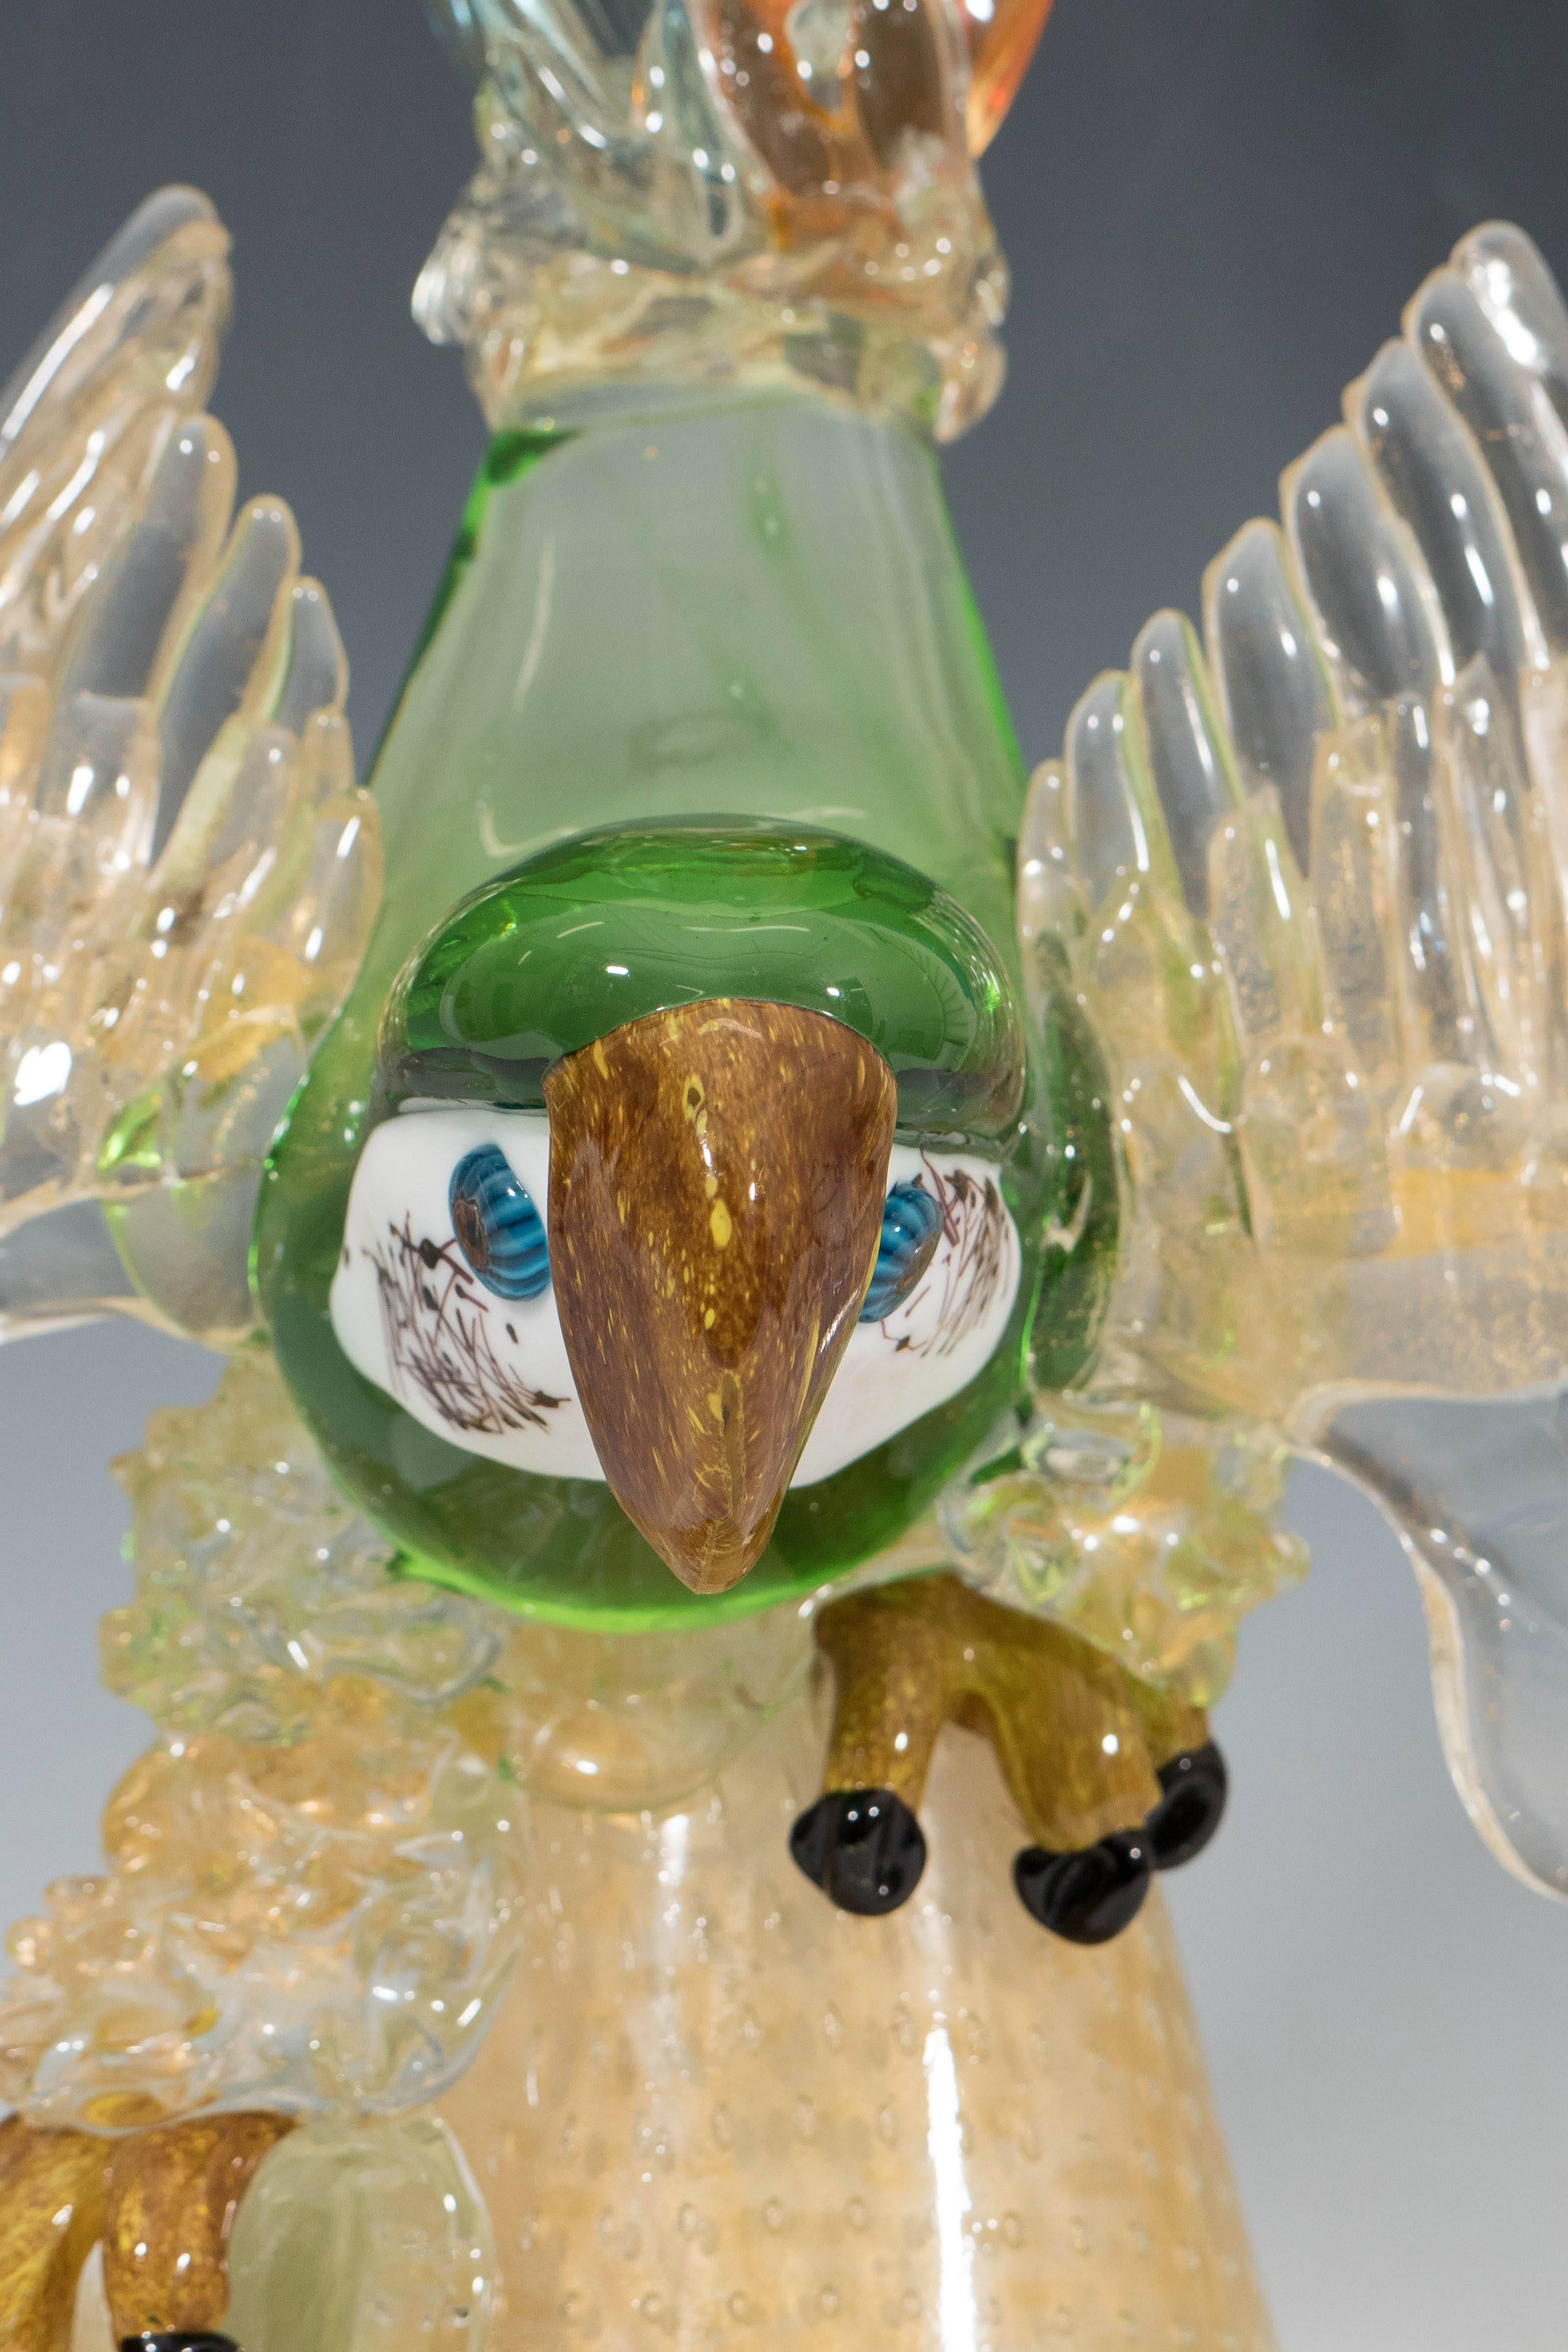 Eine große Skulptur eines Papageis im Stil von Barovier e Toso, mundgeblasen aus mehrfarbigem Murano-Glas, mit unglaublich detailliertem Kopf, Schnabel und Krallen. Die Skulptur befindet sich auf einem kegelförmigen Sockel mit kontrollierten